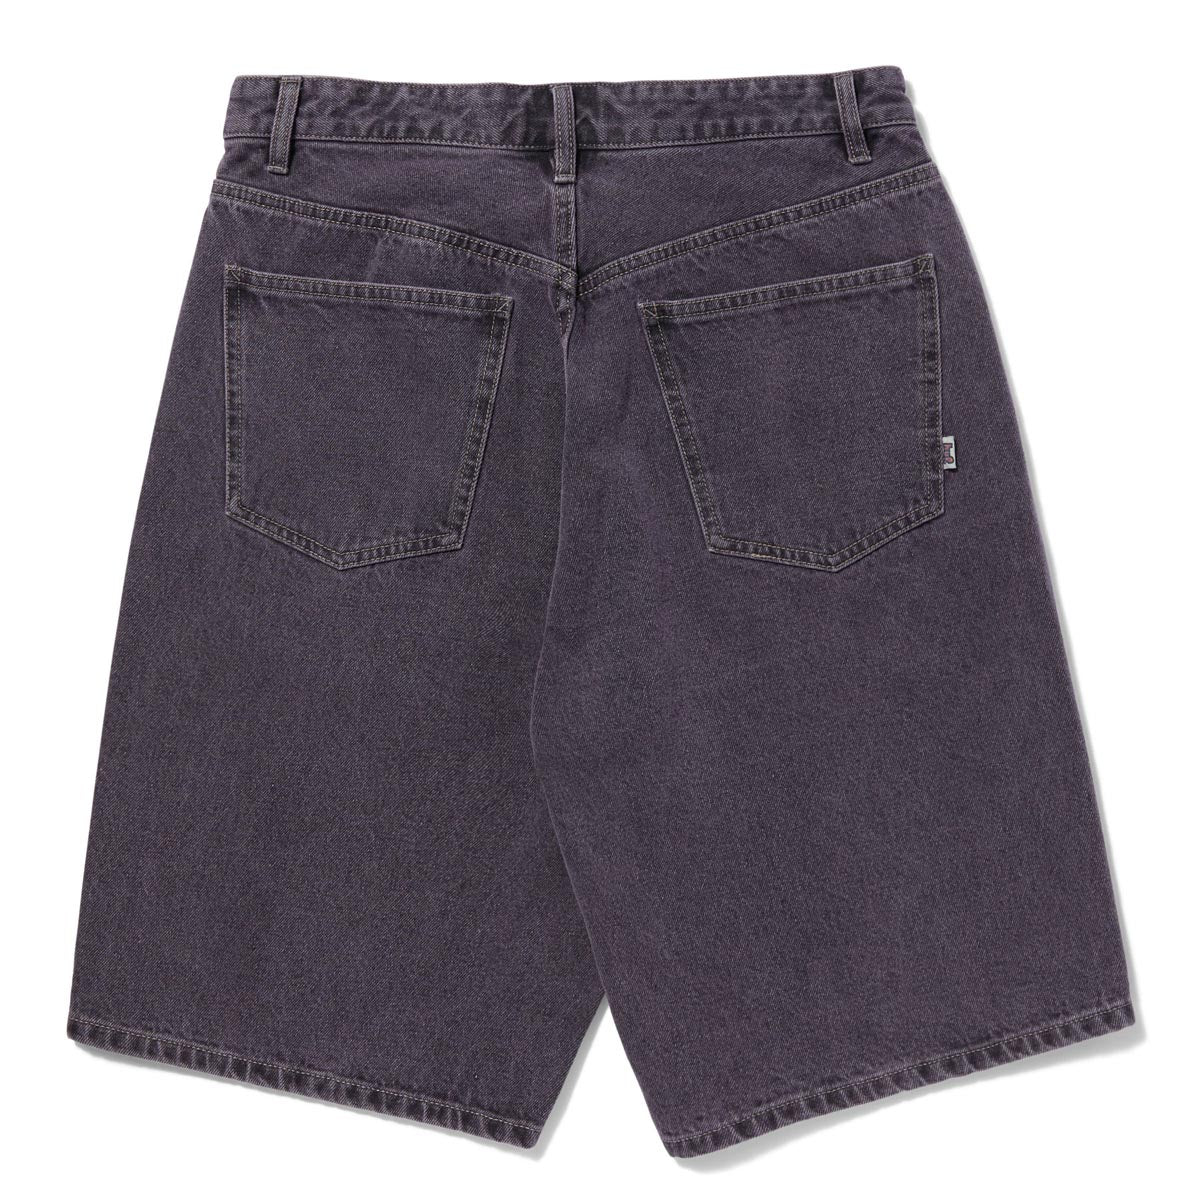 HUF Cromer Shorts - Lavender image 2